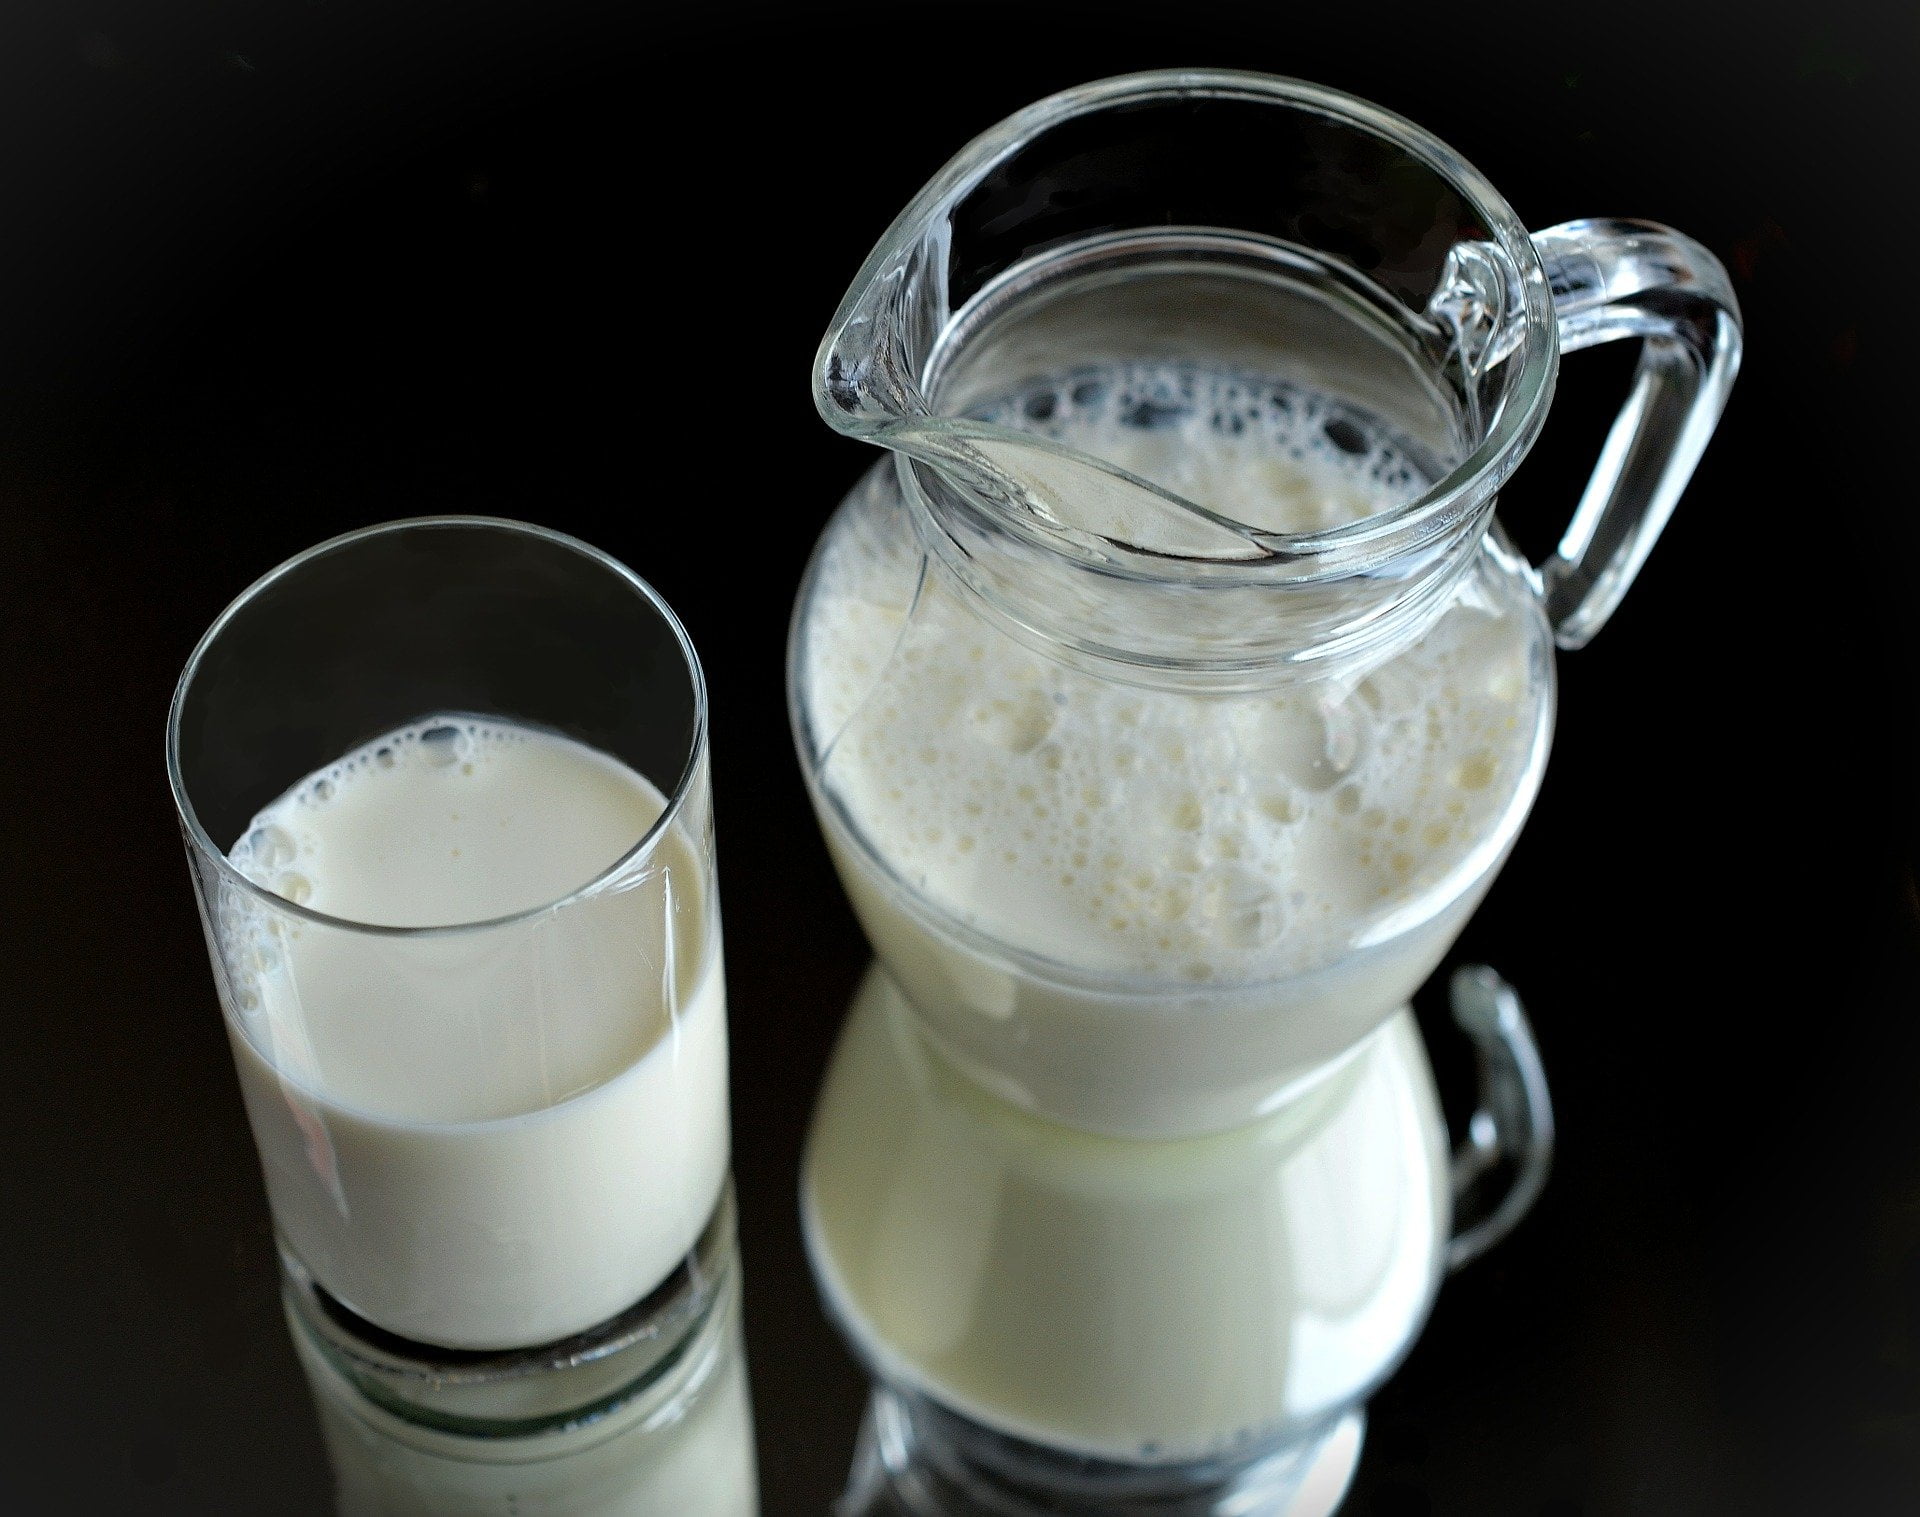 Ce lapte ar trebui sa consumi?